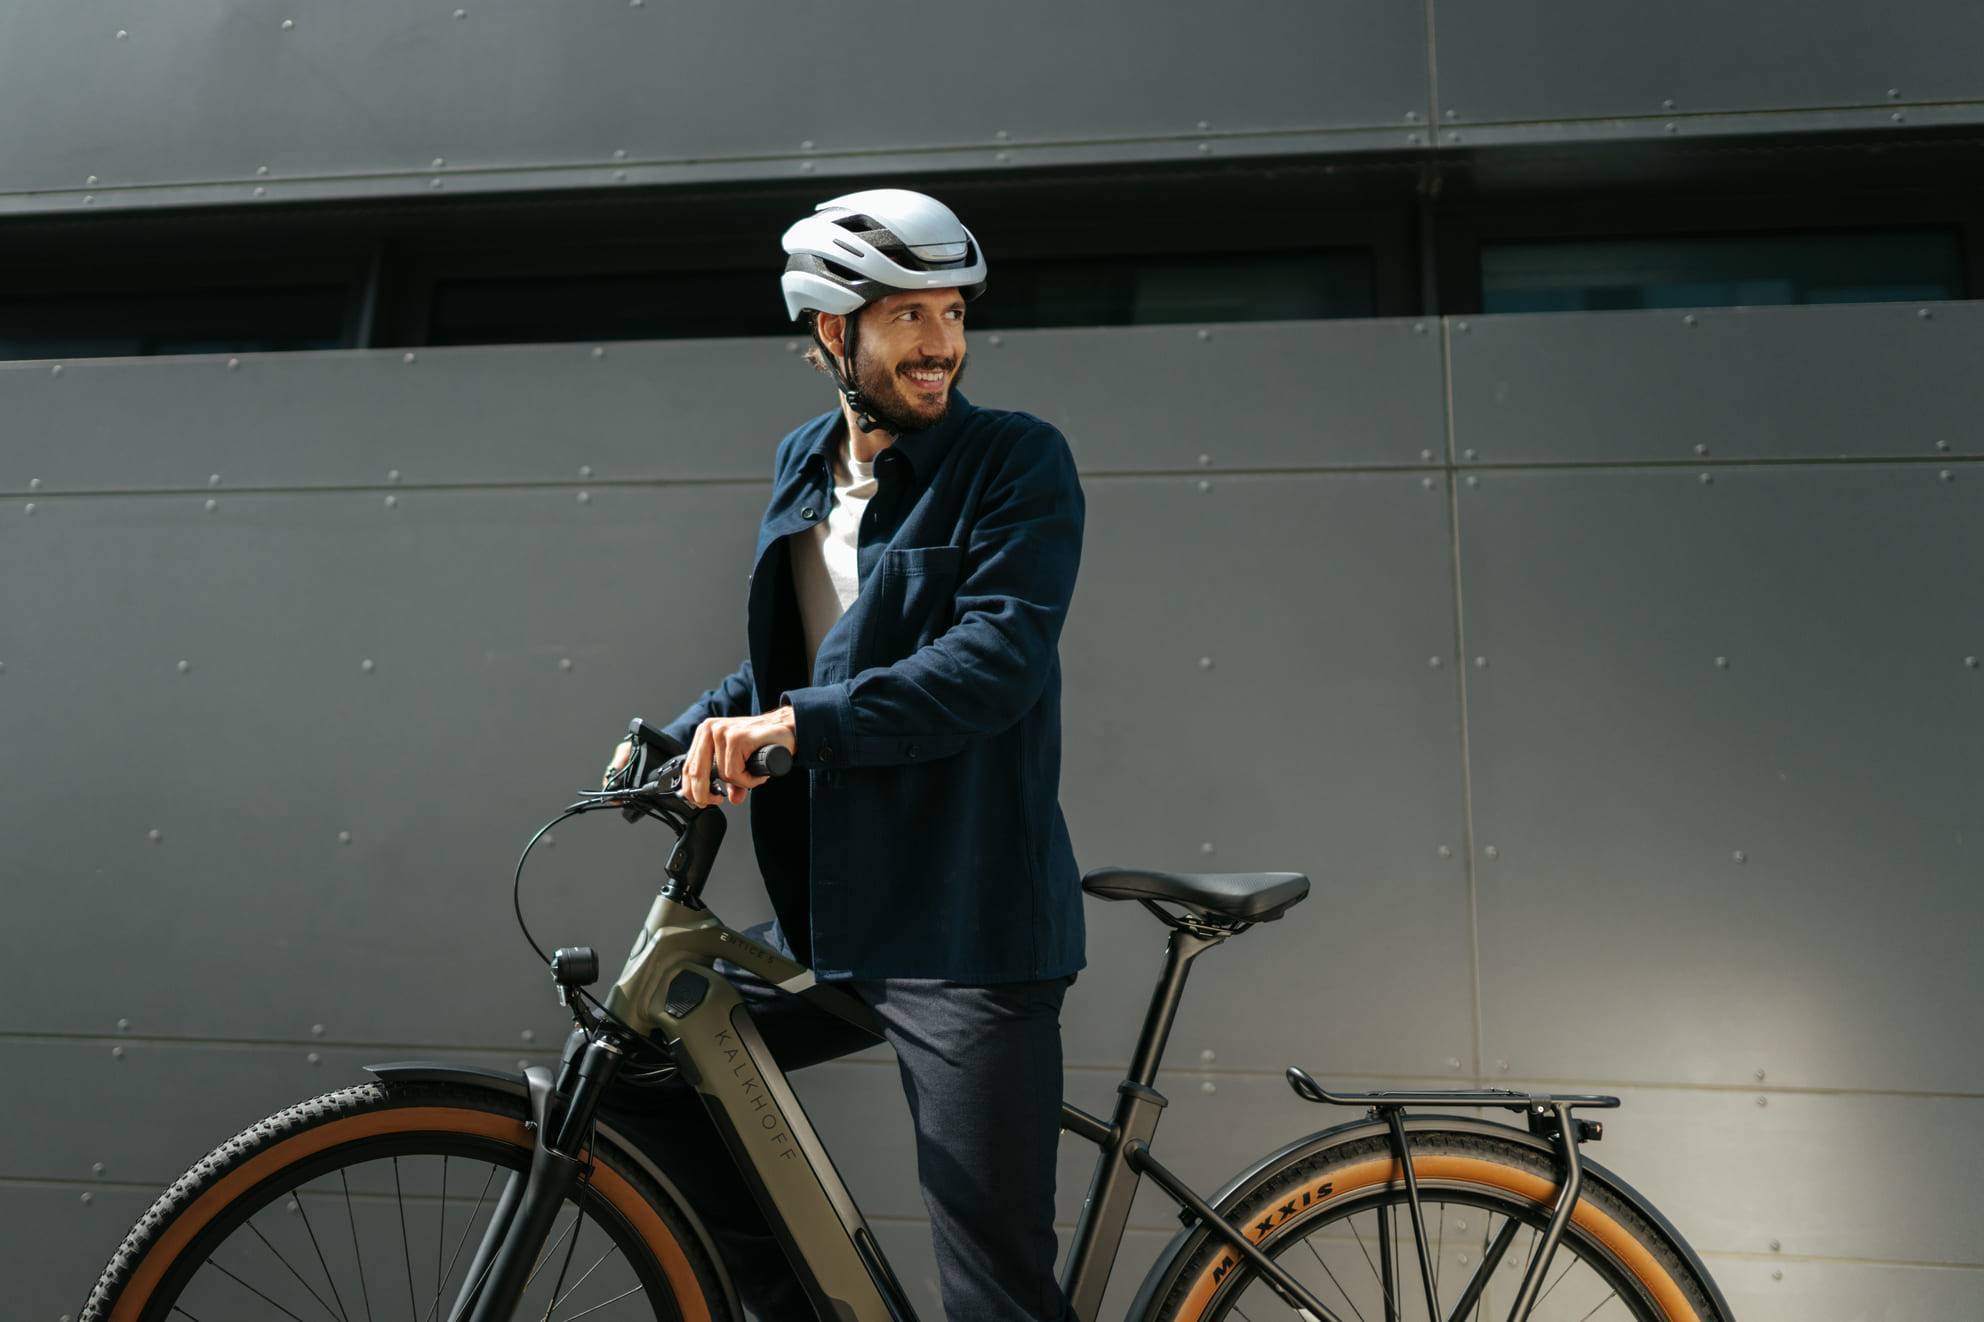 Mann steht mit Fahrrad vor Wand und blickt lachend zurück Dienstradleasing